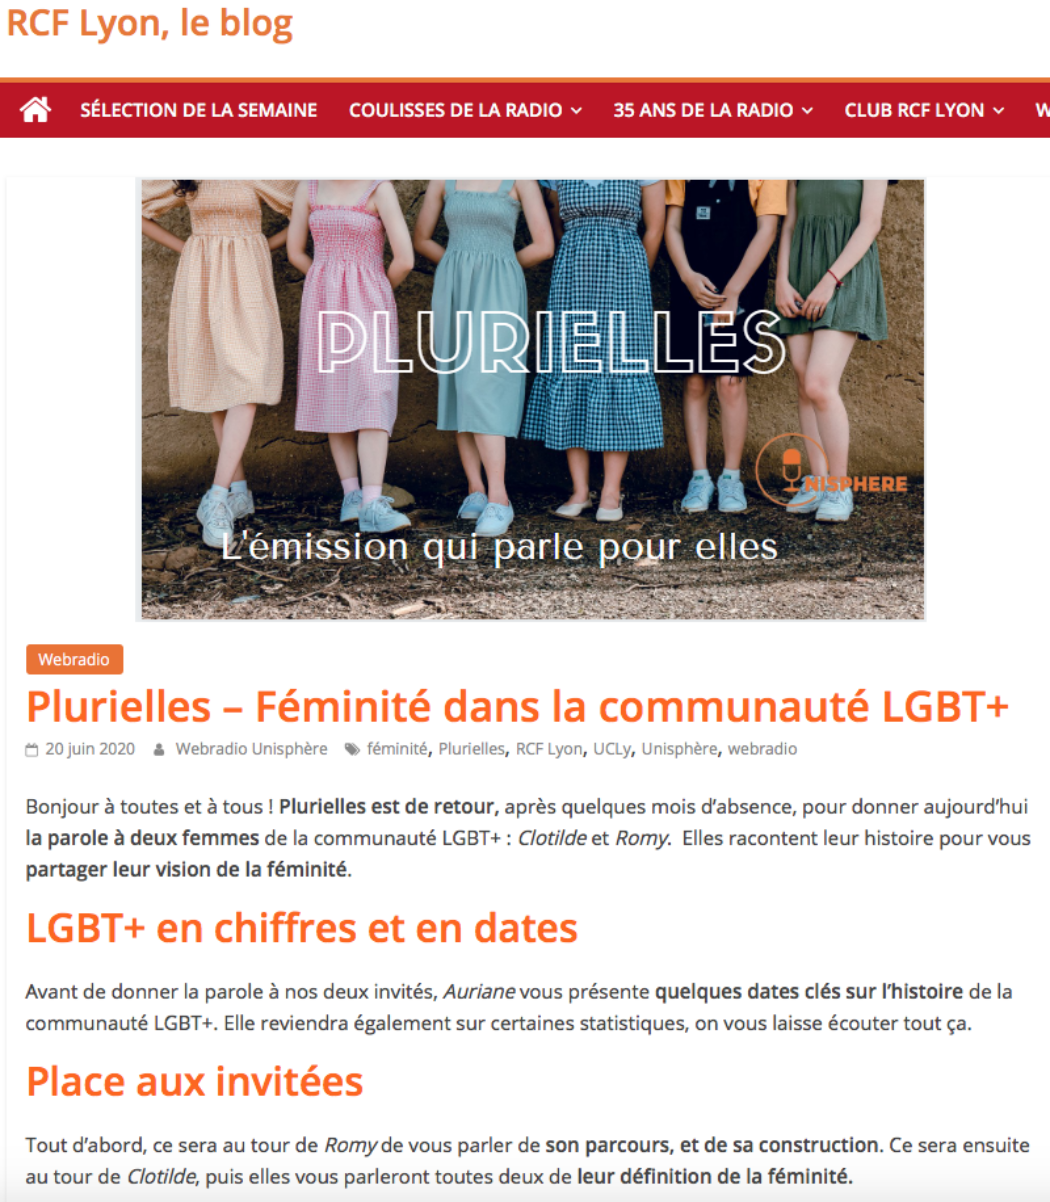 RCF Lyon, relais du lobby LGBT [Addendum : émission supprimée]